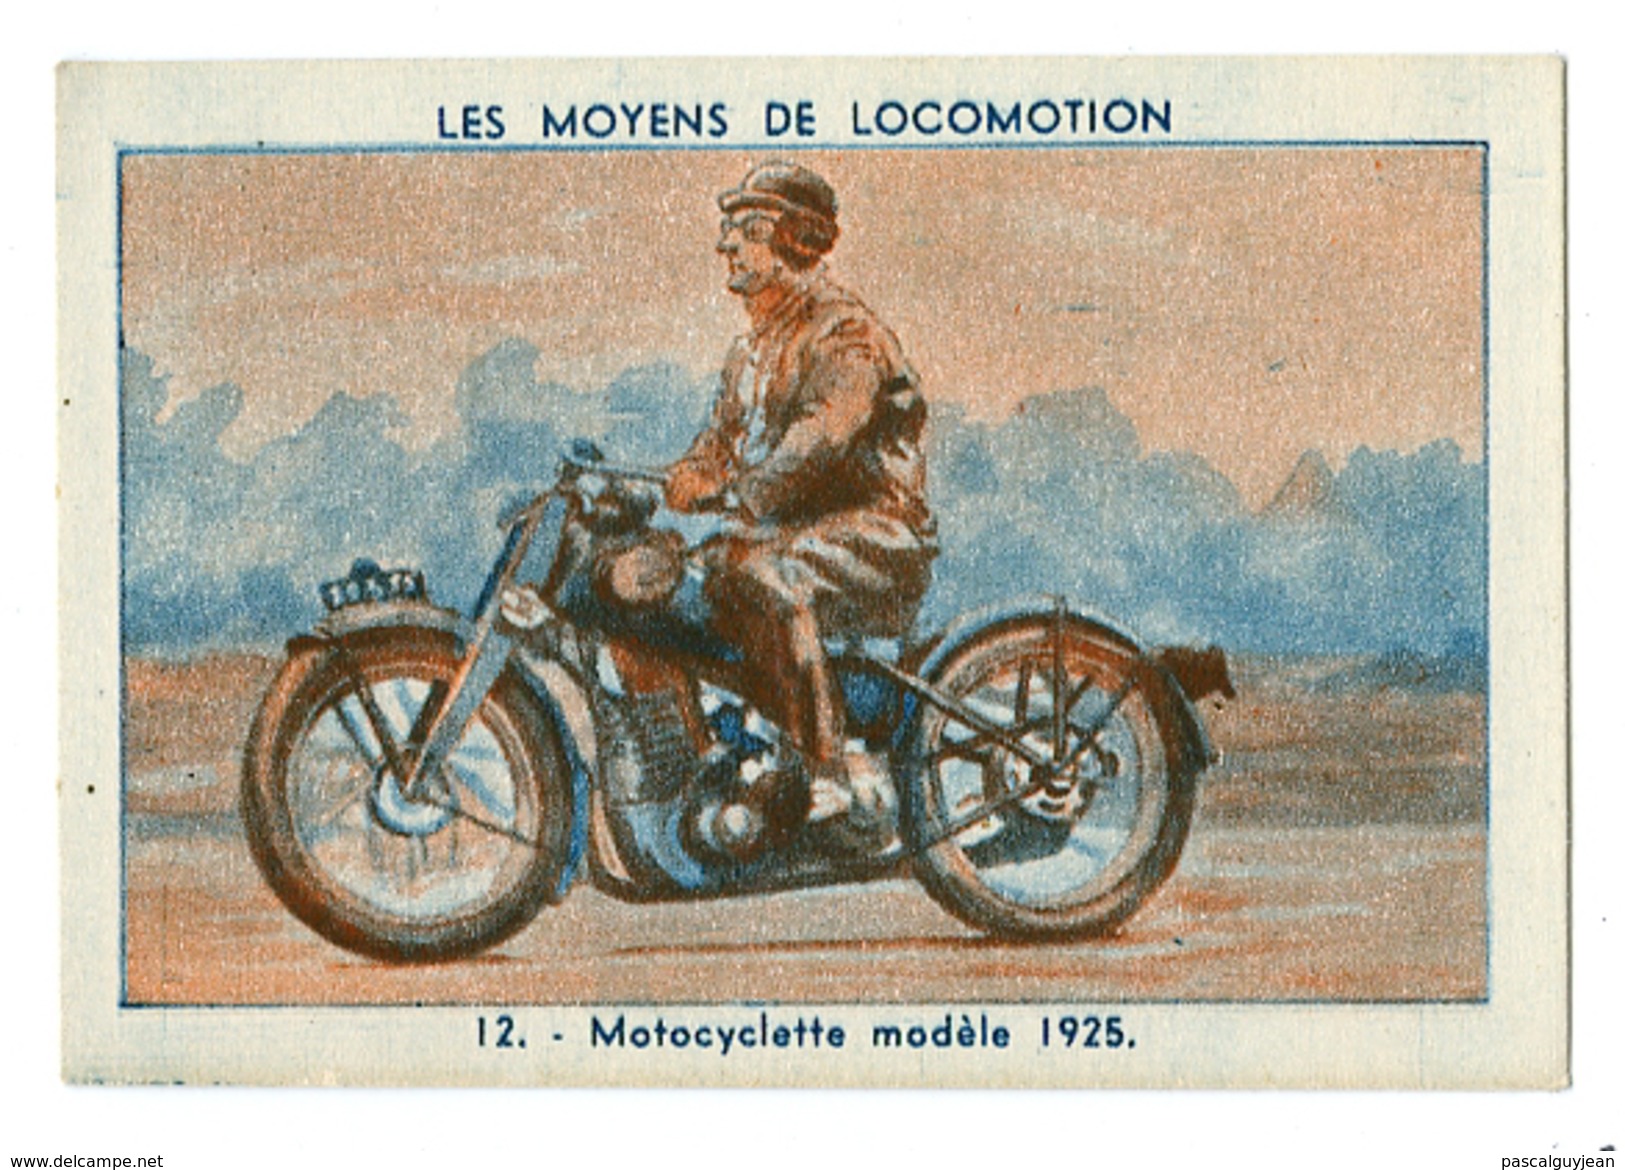 CHROMO LES MOYENS DE LOCOMOTION - MOTOCYCLETTE MODELE 1925 - Voitures